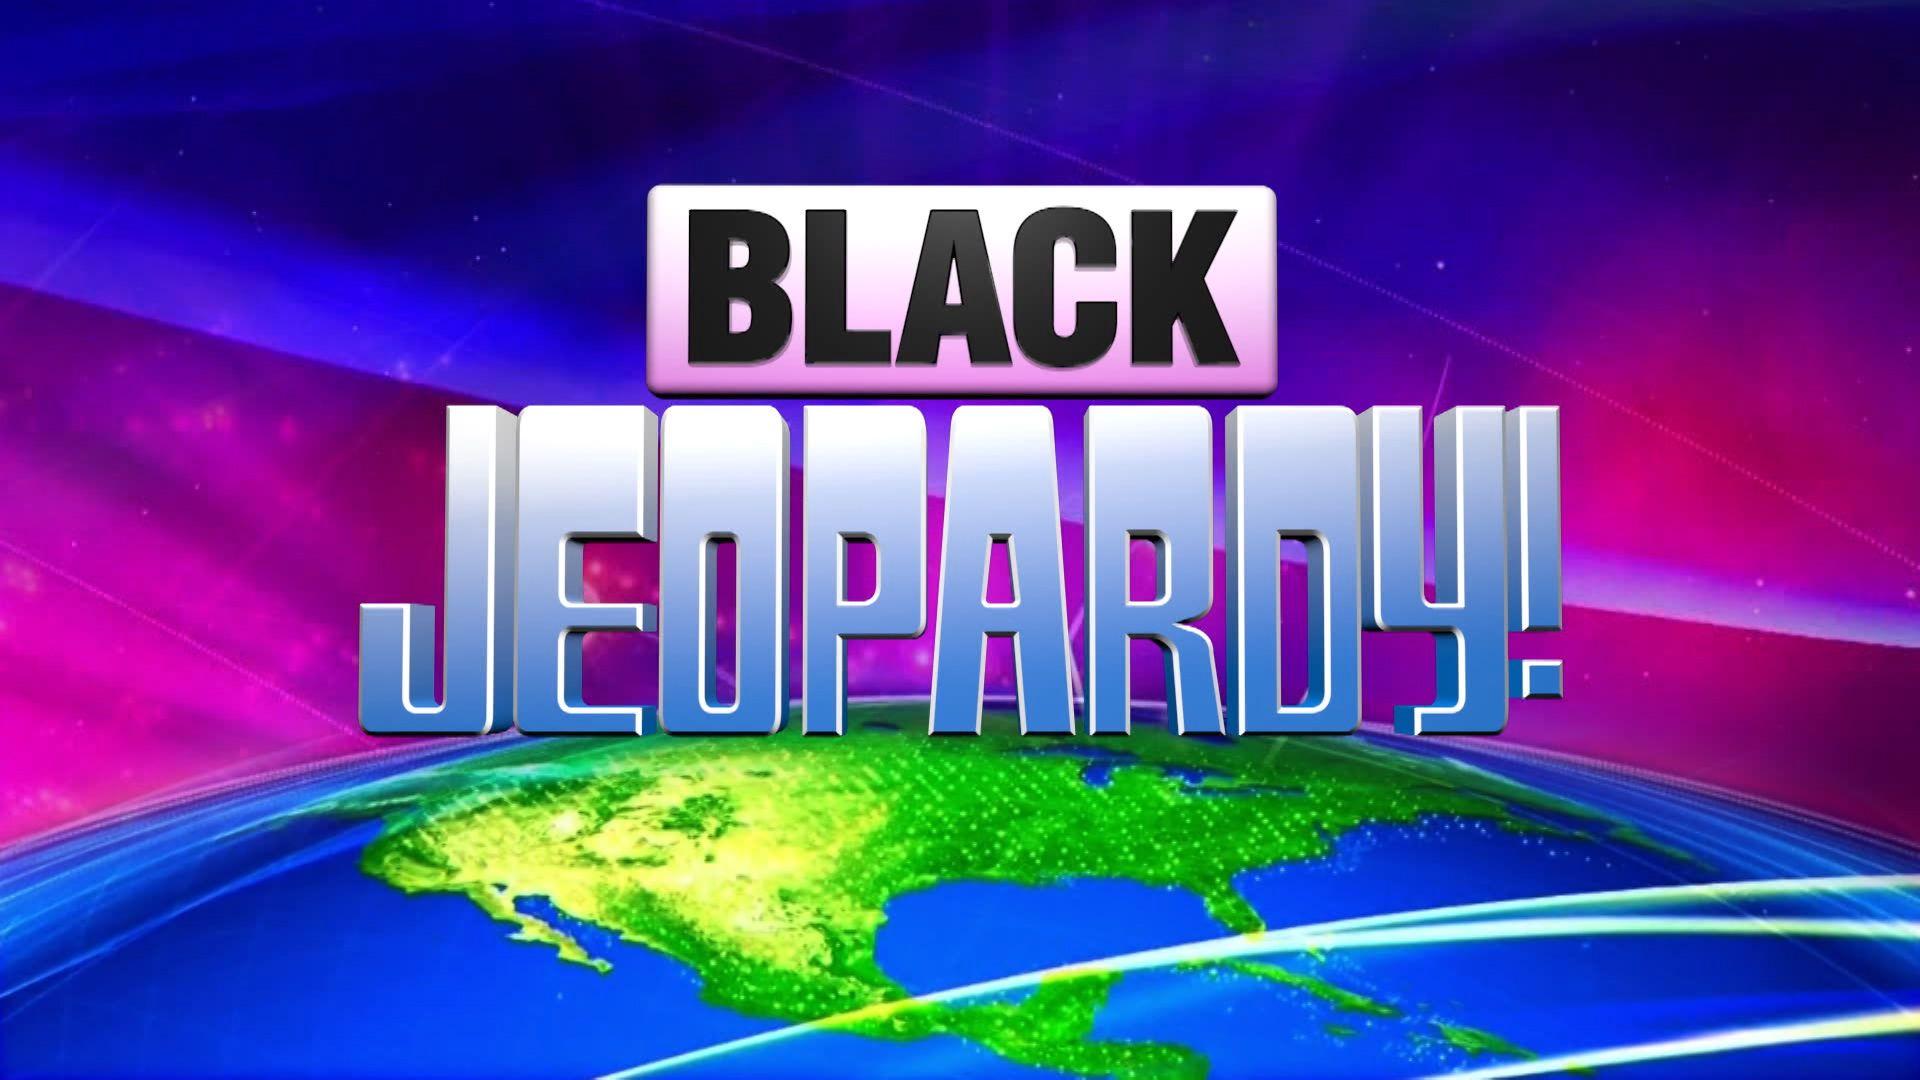 Jeopardy Game Show Logo - Black Jeopardy!